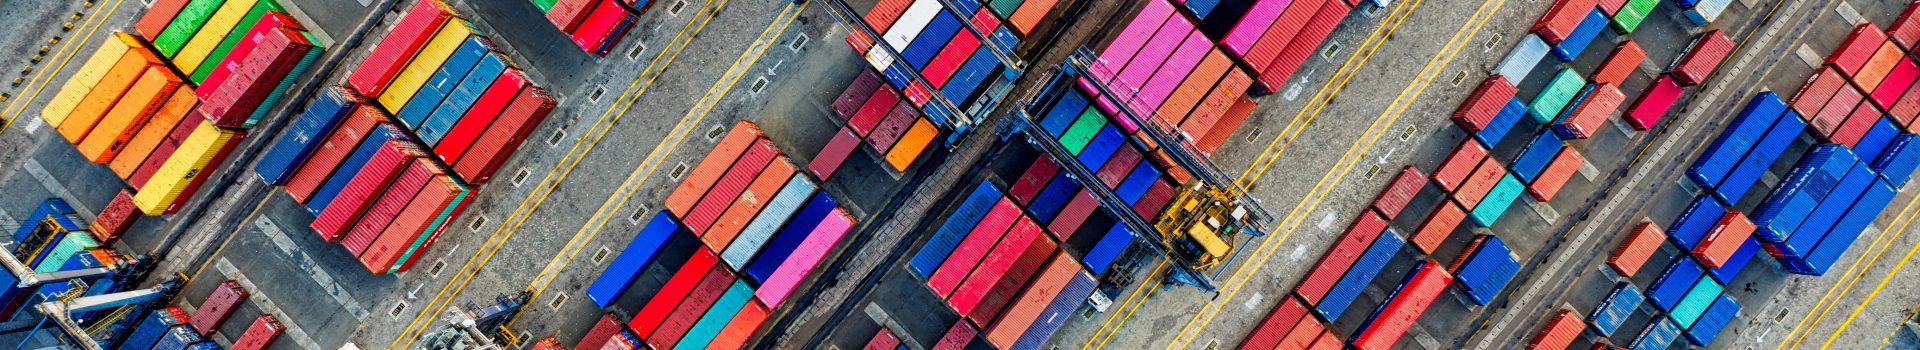 Container sind ein wichtiges Teil einer weltweiten Lieferkette